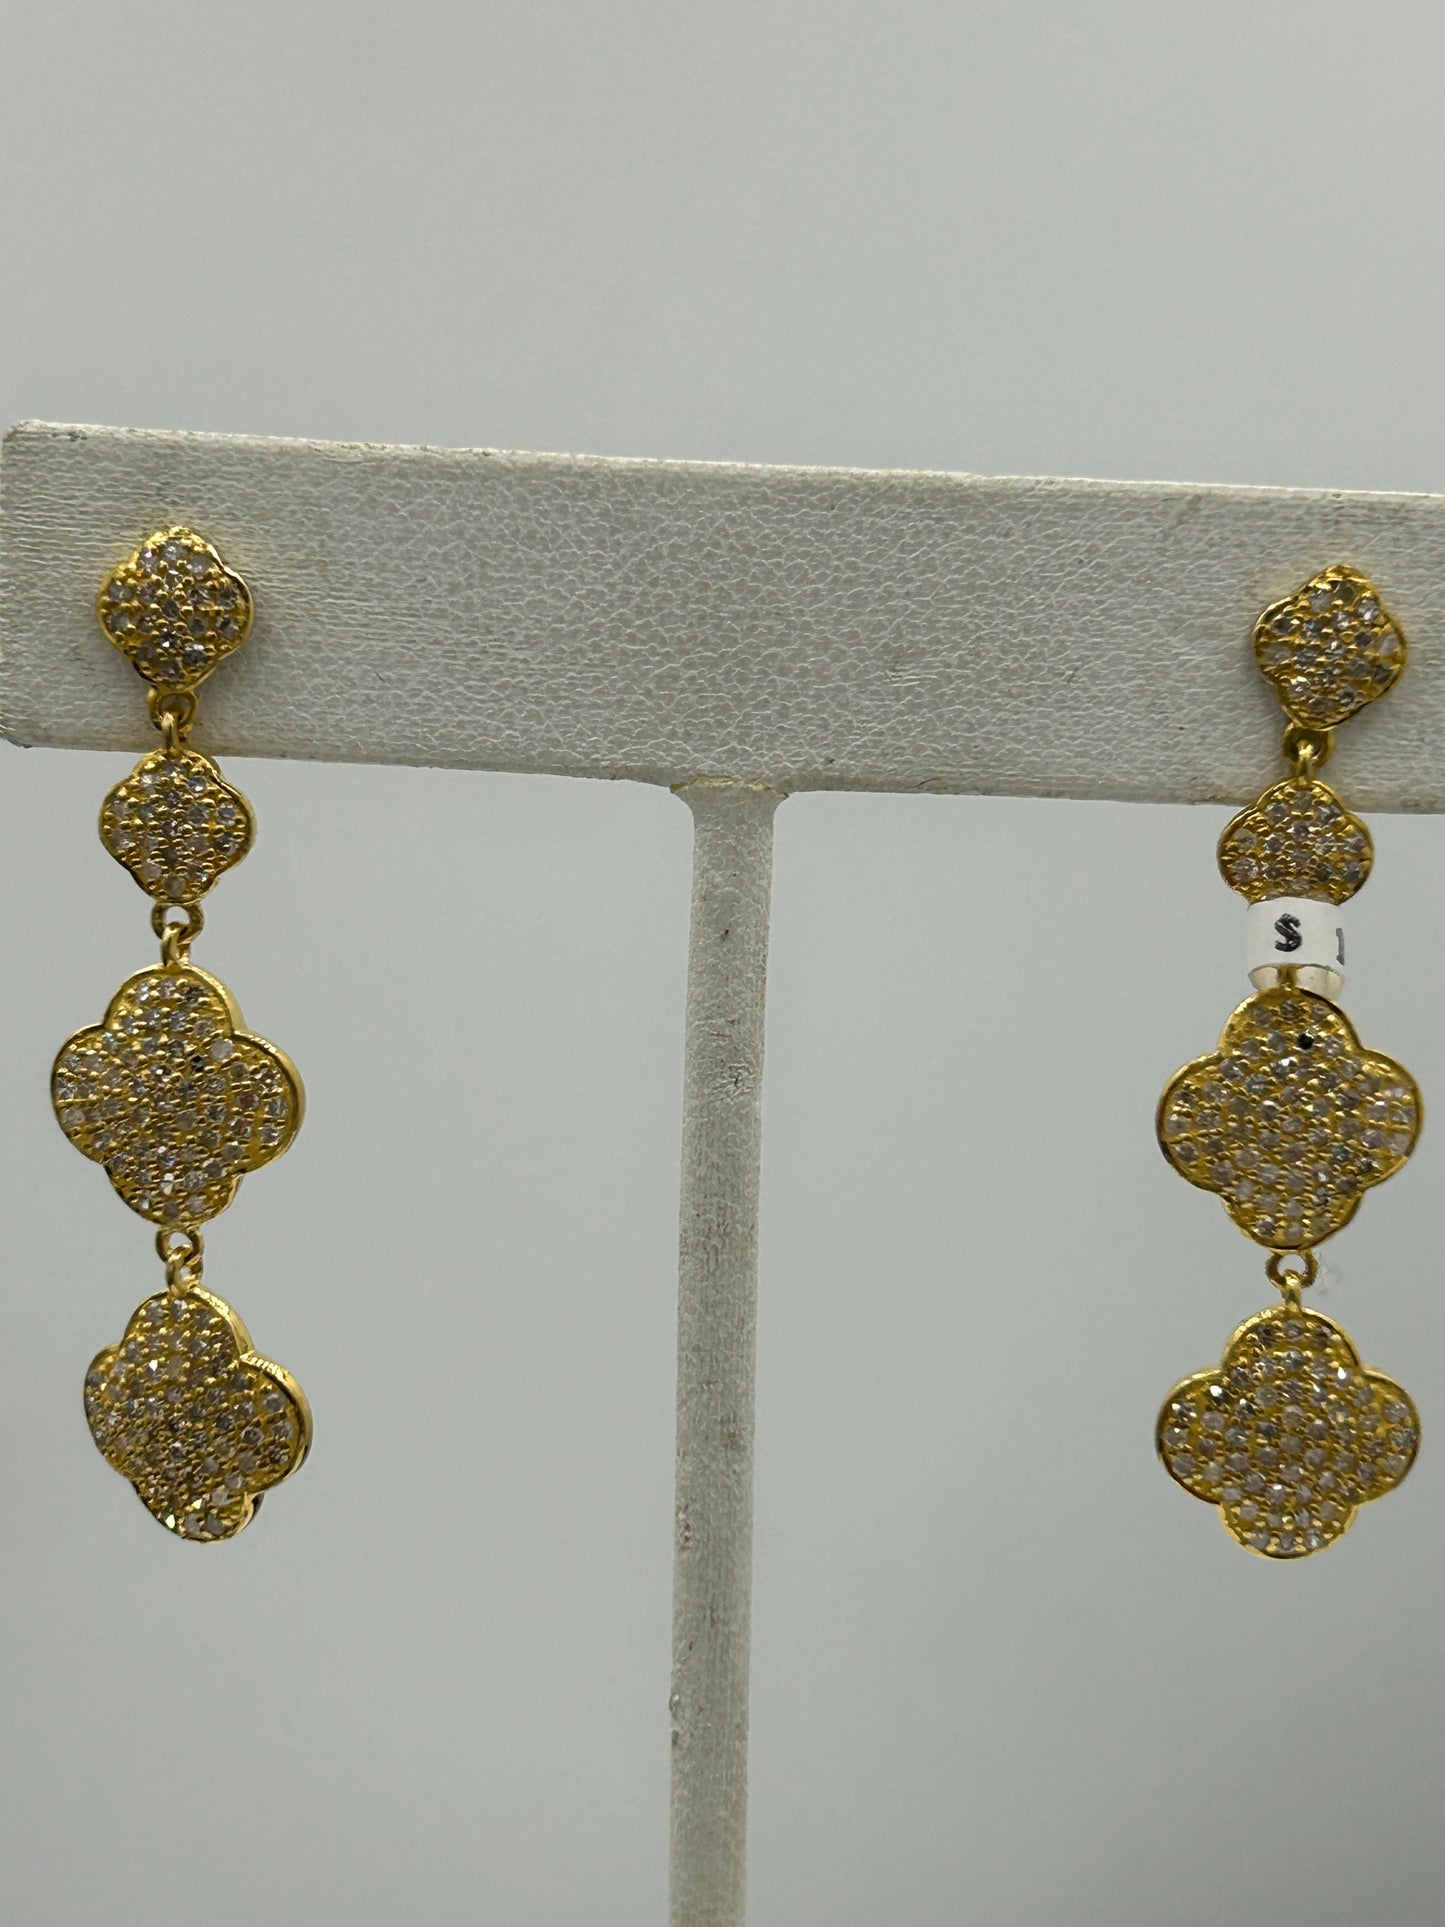 14k Solid Gold Diamond Earring. Genuine handmade pave diamond Earring. 14k Solid Gold Diamond Earring..